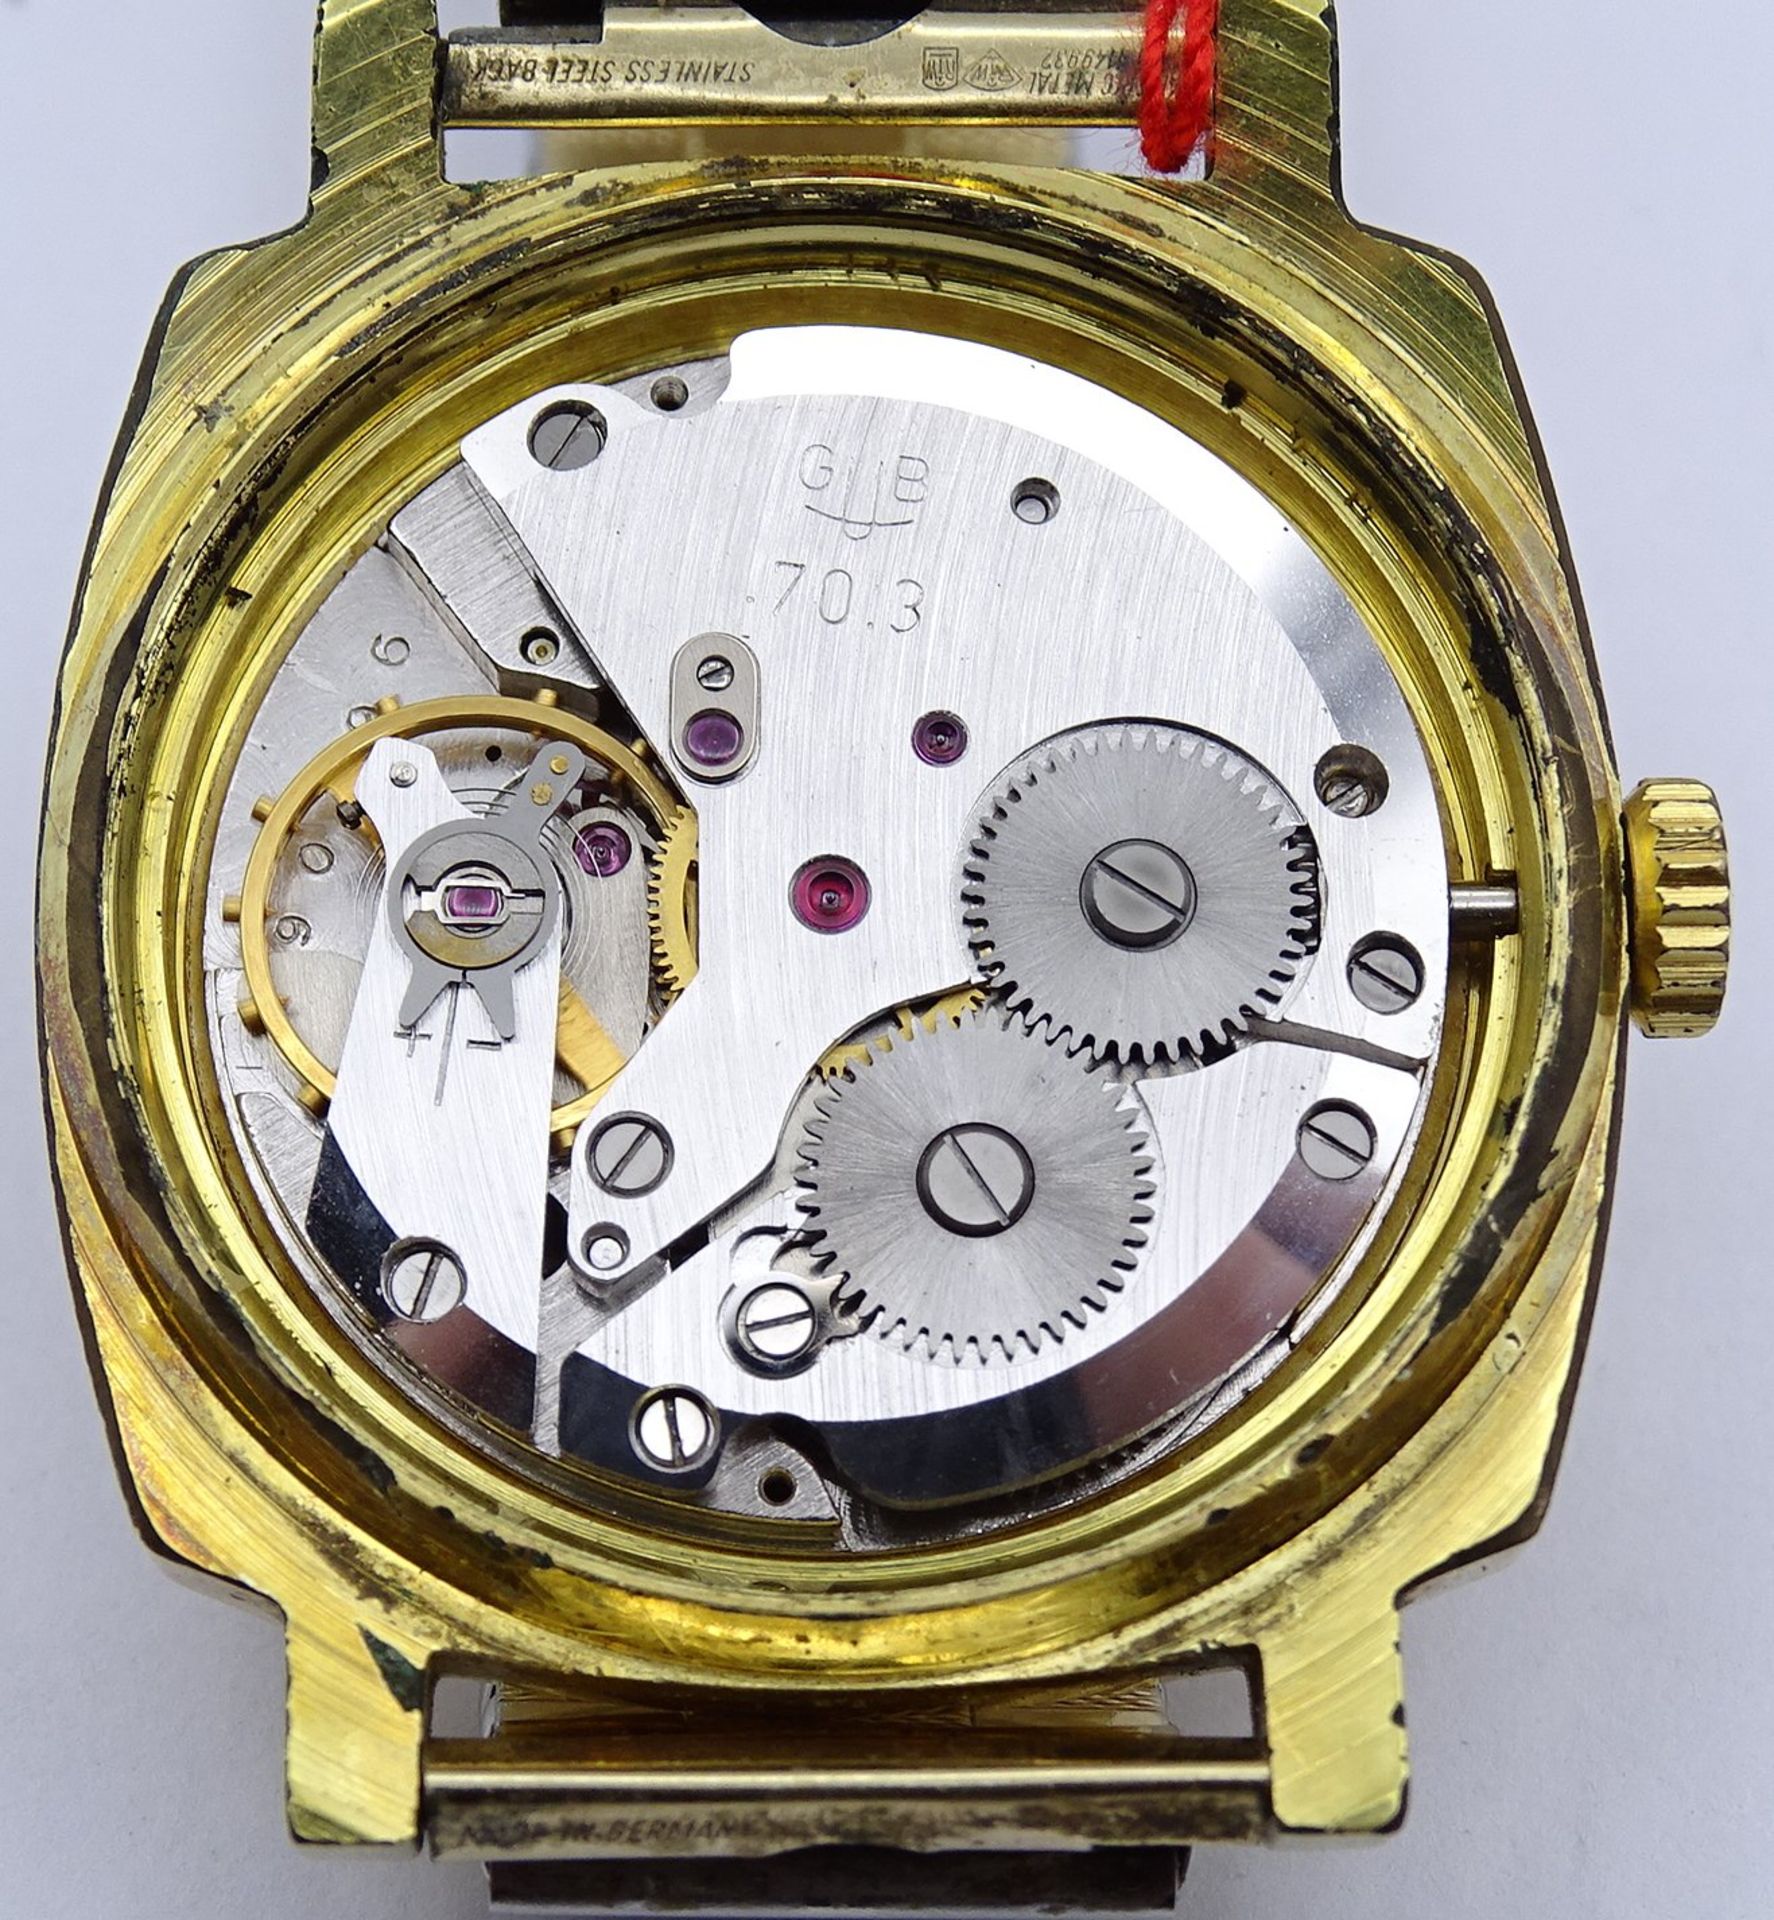 Herren Armbanduhr "Glashütte", Q1, Chronometer,Cal. 70.3 mechanisch, Werk läuft, Gehäuse 35 x 35mm, - Image 6 of 10